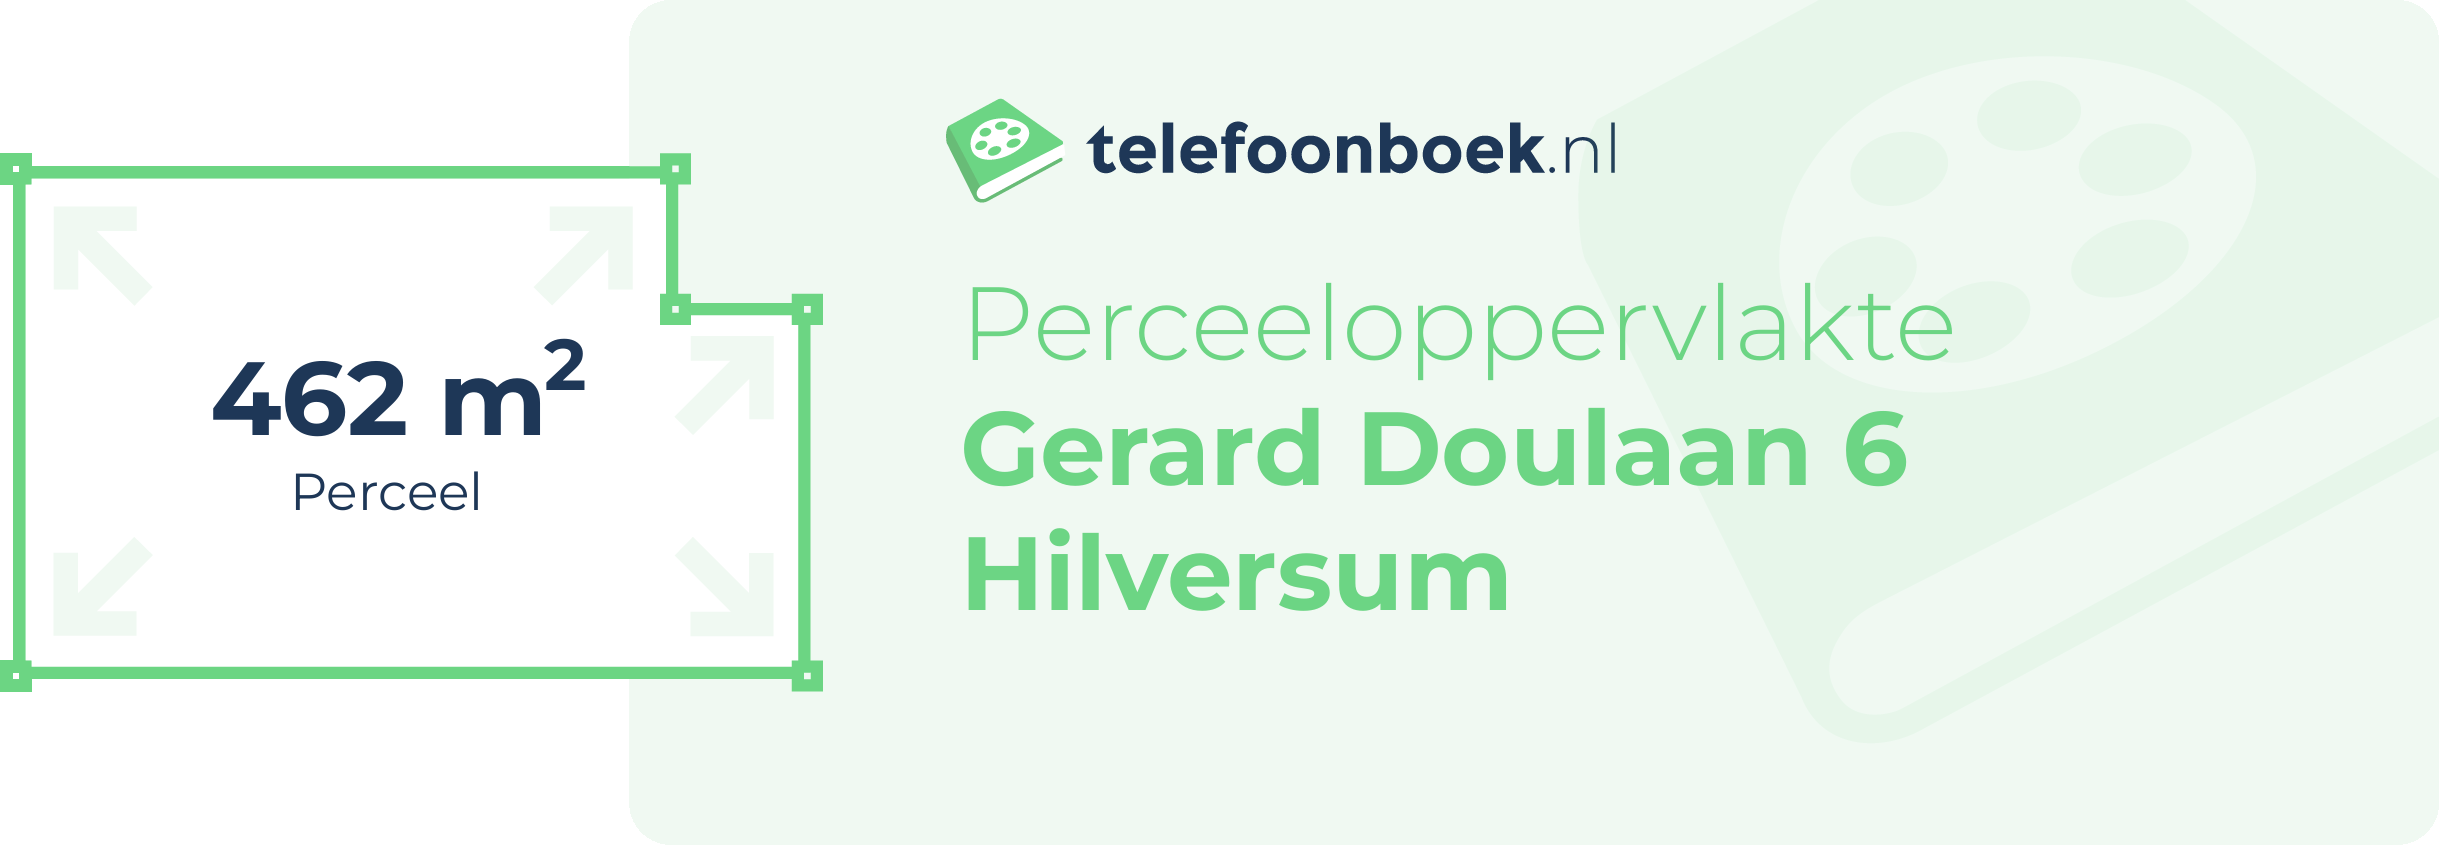 Perceeloppervlakte Gerard Doulaan 6 Hilversum